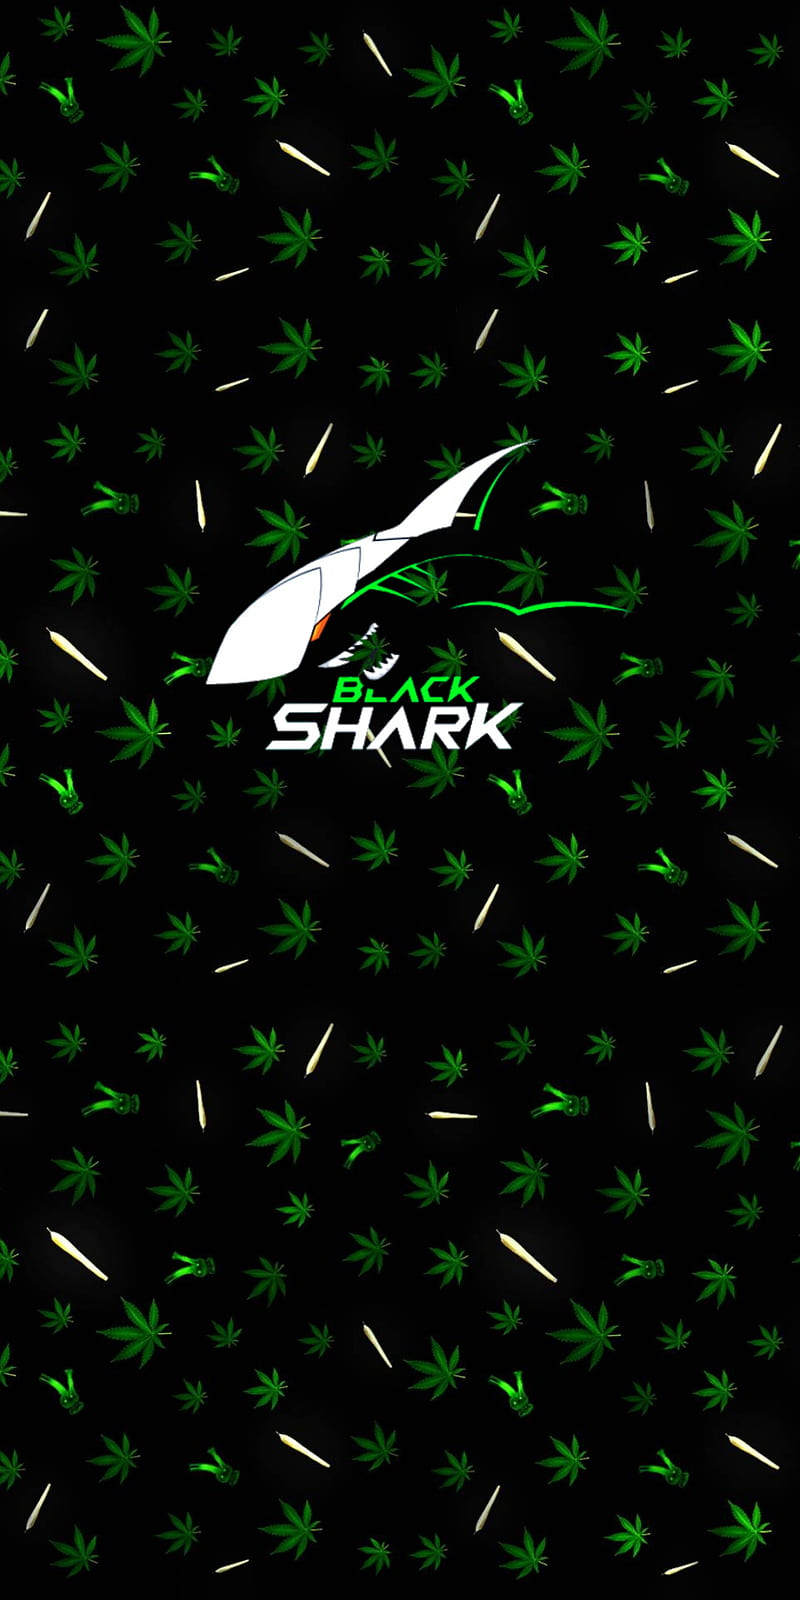 Smartphone chuyên game Black Shark 3 ra mắt: Cấu hình mạnh, thiết kế hầm  hố, giá từ 11.7 triệu đồng